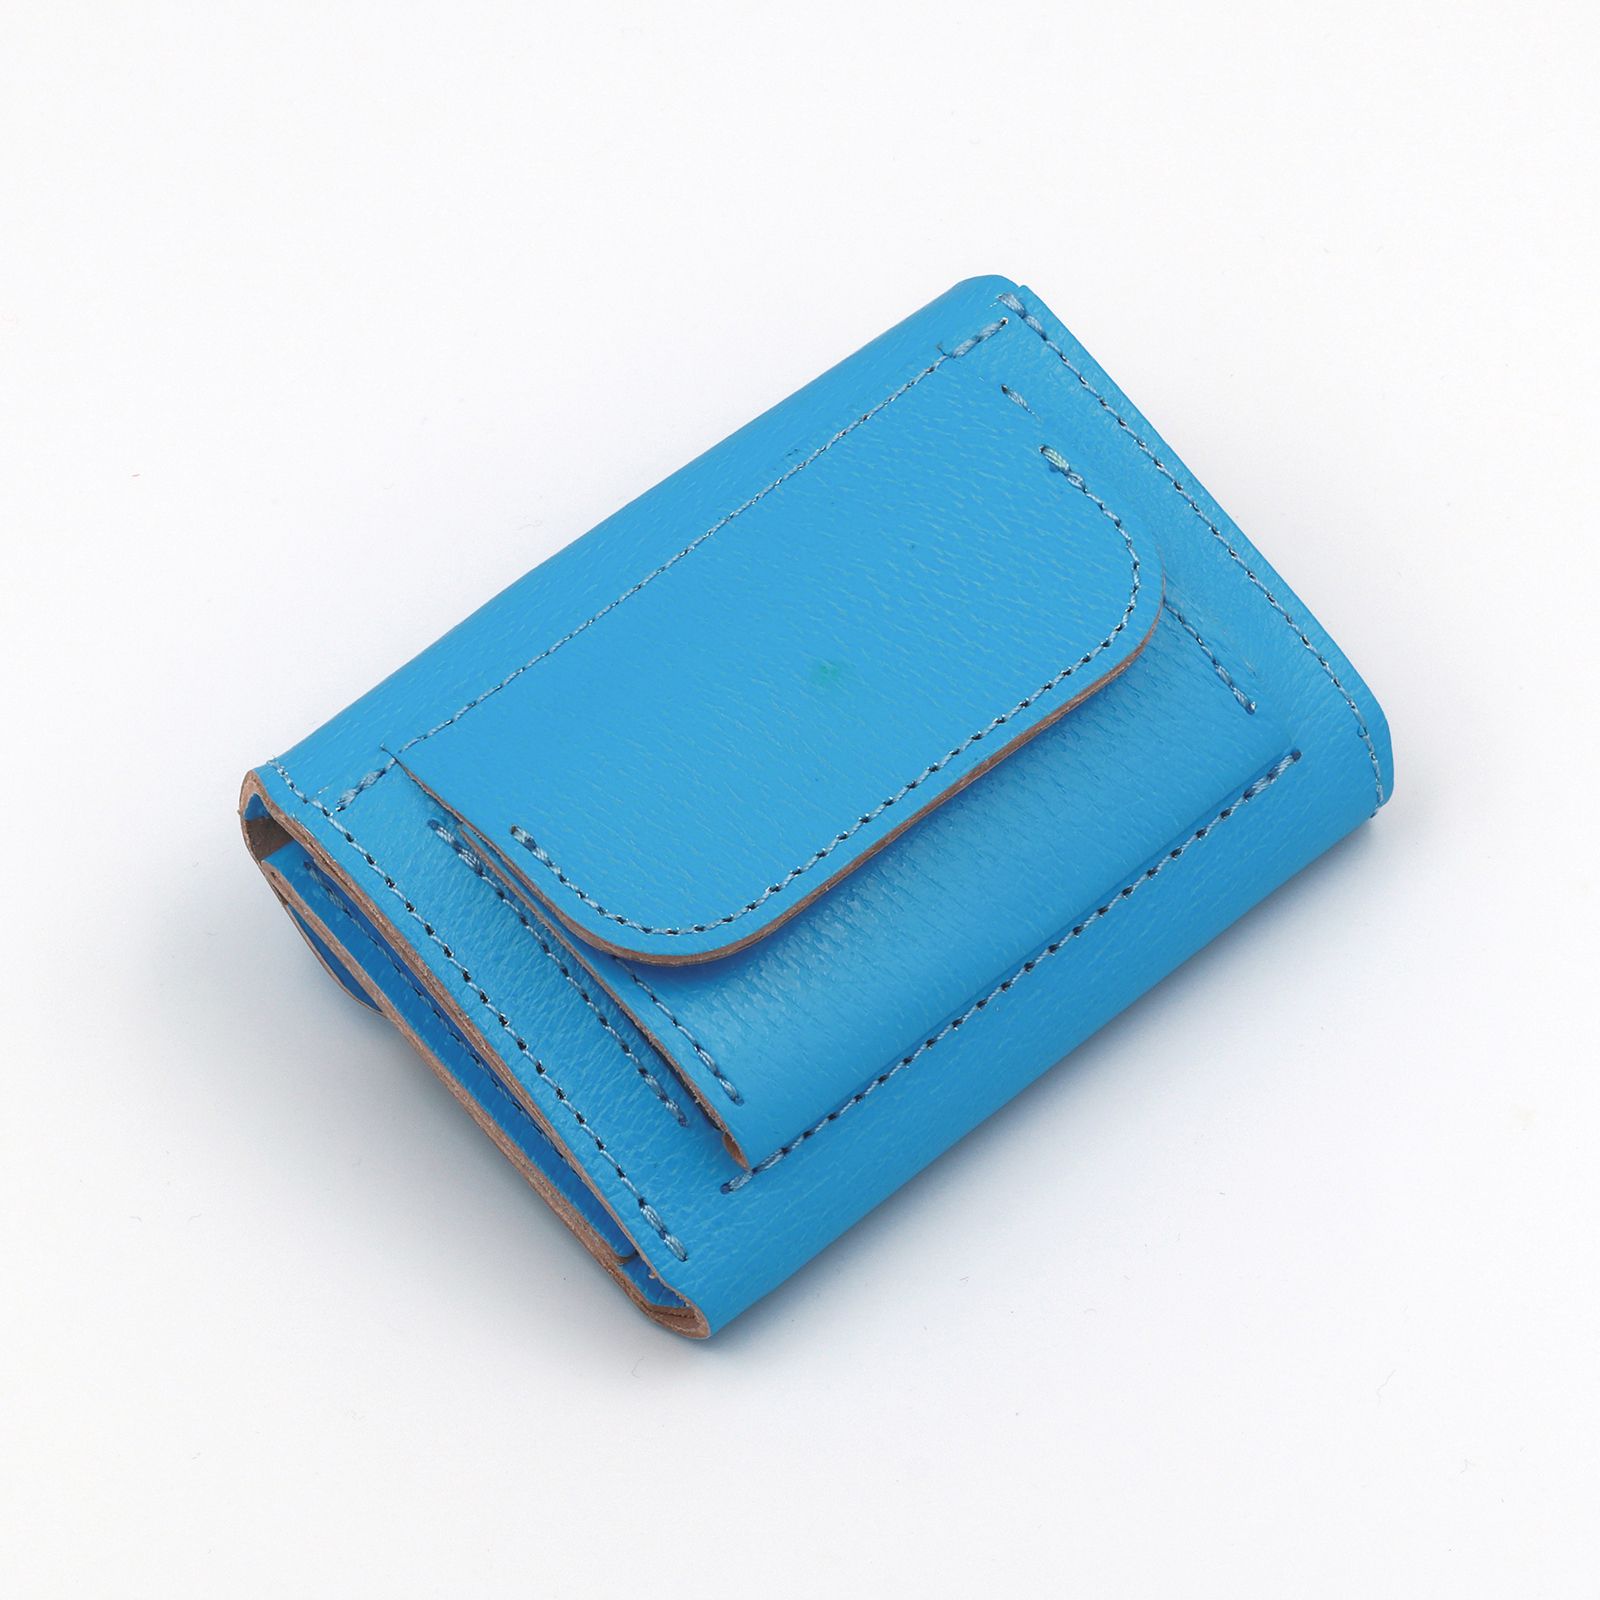 1/2 HALF - 「Neon Compact Wallet」ミニウォレット ブルー | corne/コルネ